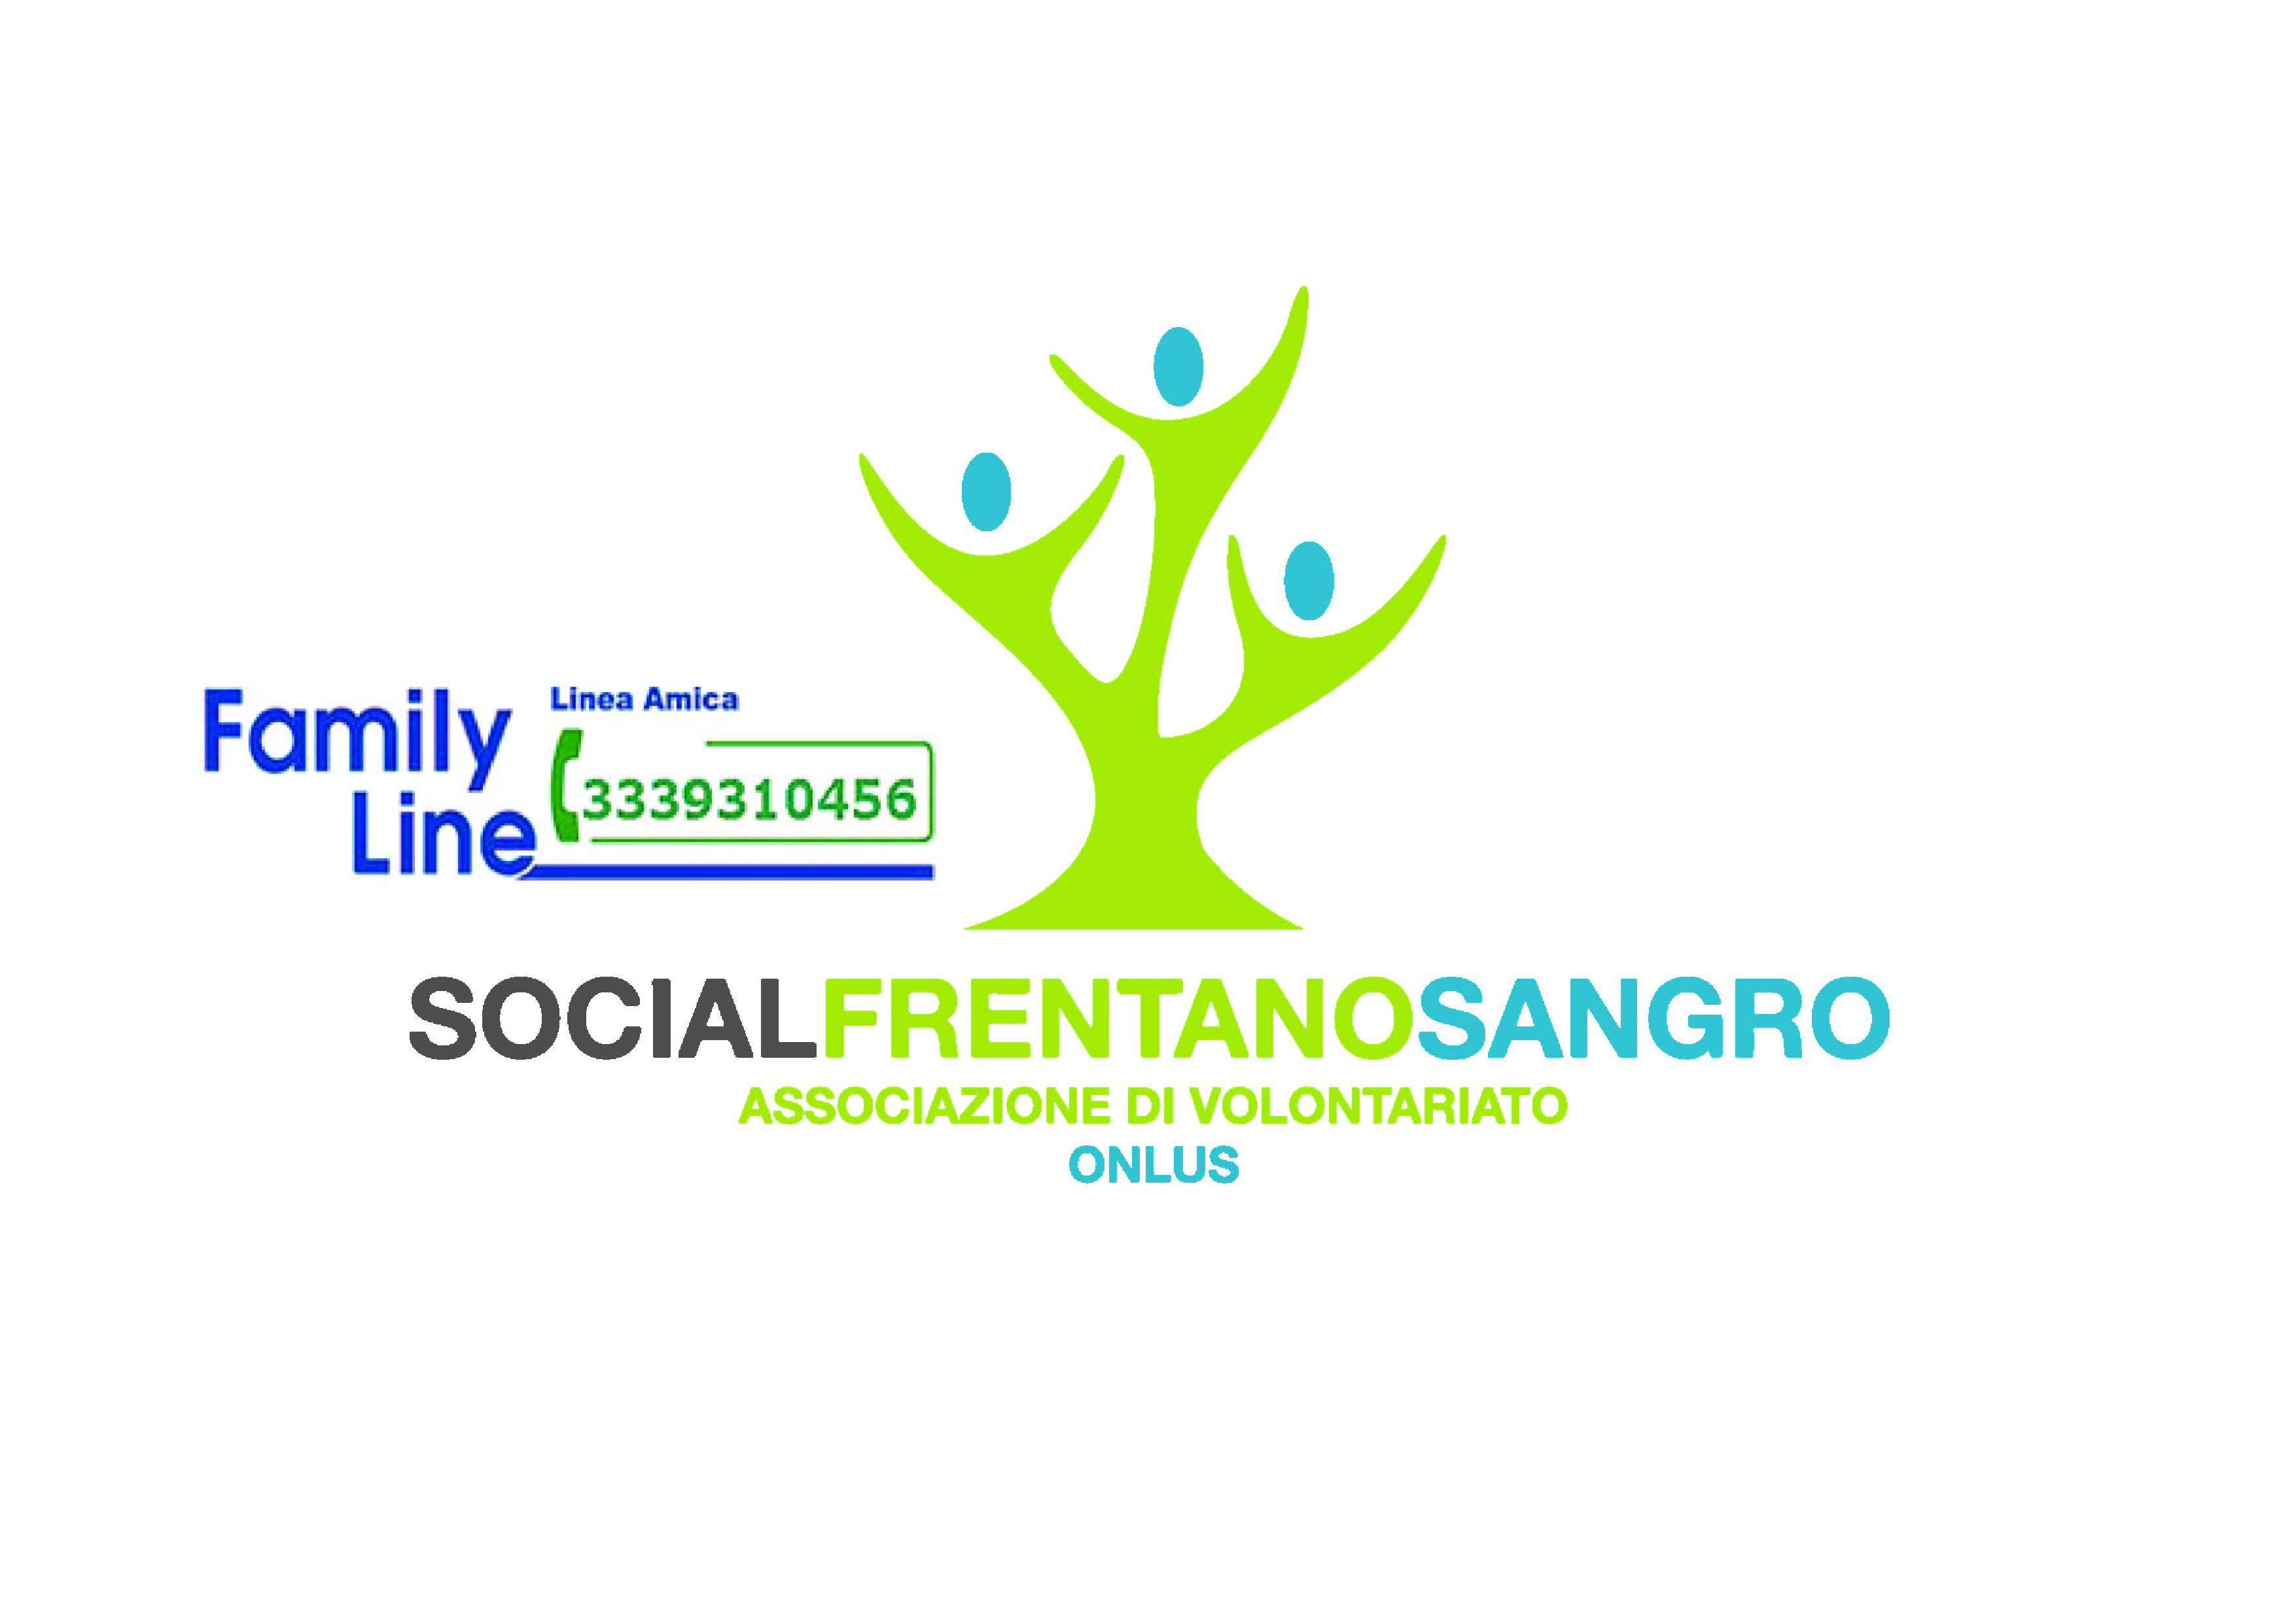 FAMILY-LINE AMMORTIZZATORE SOCIALE E SANITARIO ALLA FAMIGLIA